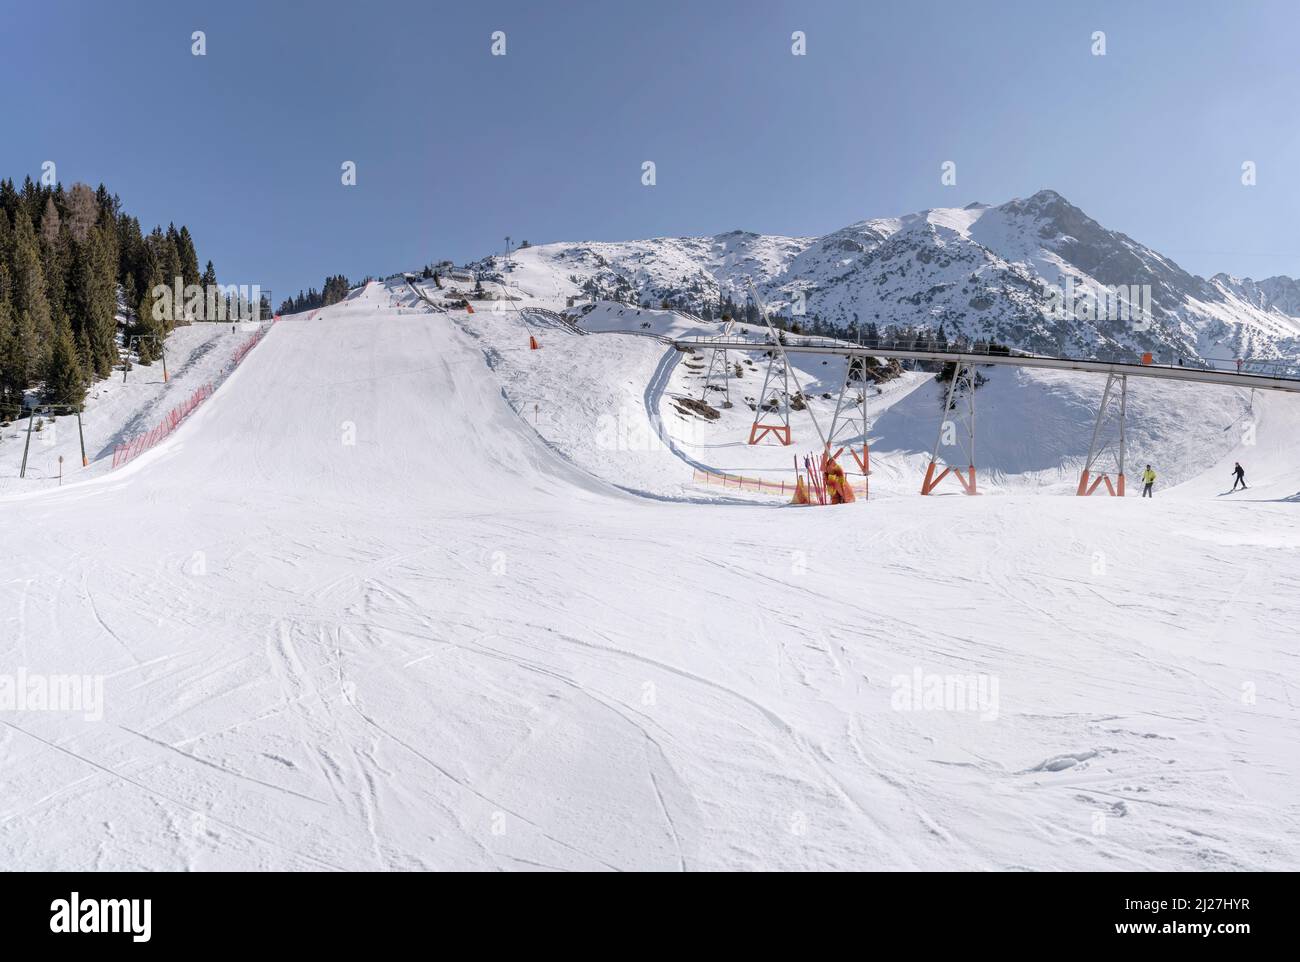 Winter-Berglandschaft mit verschneiten Pisten und Zahnradbahn bei Rosshutte, aufgenommen in hellem Licht bei Seefeld, Tirol, Österreich, Stockfoto